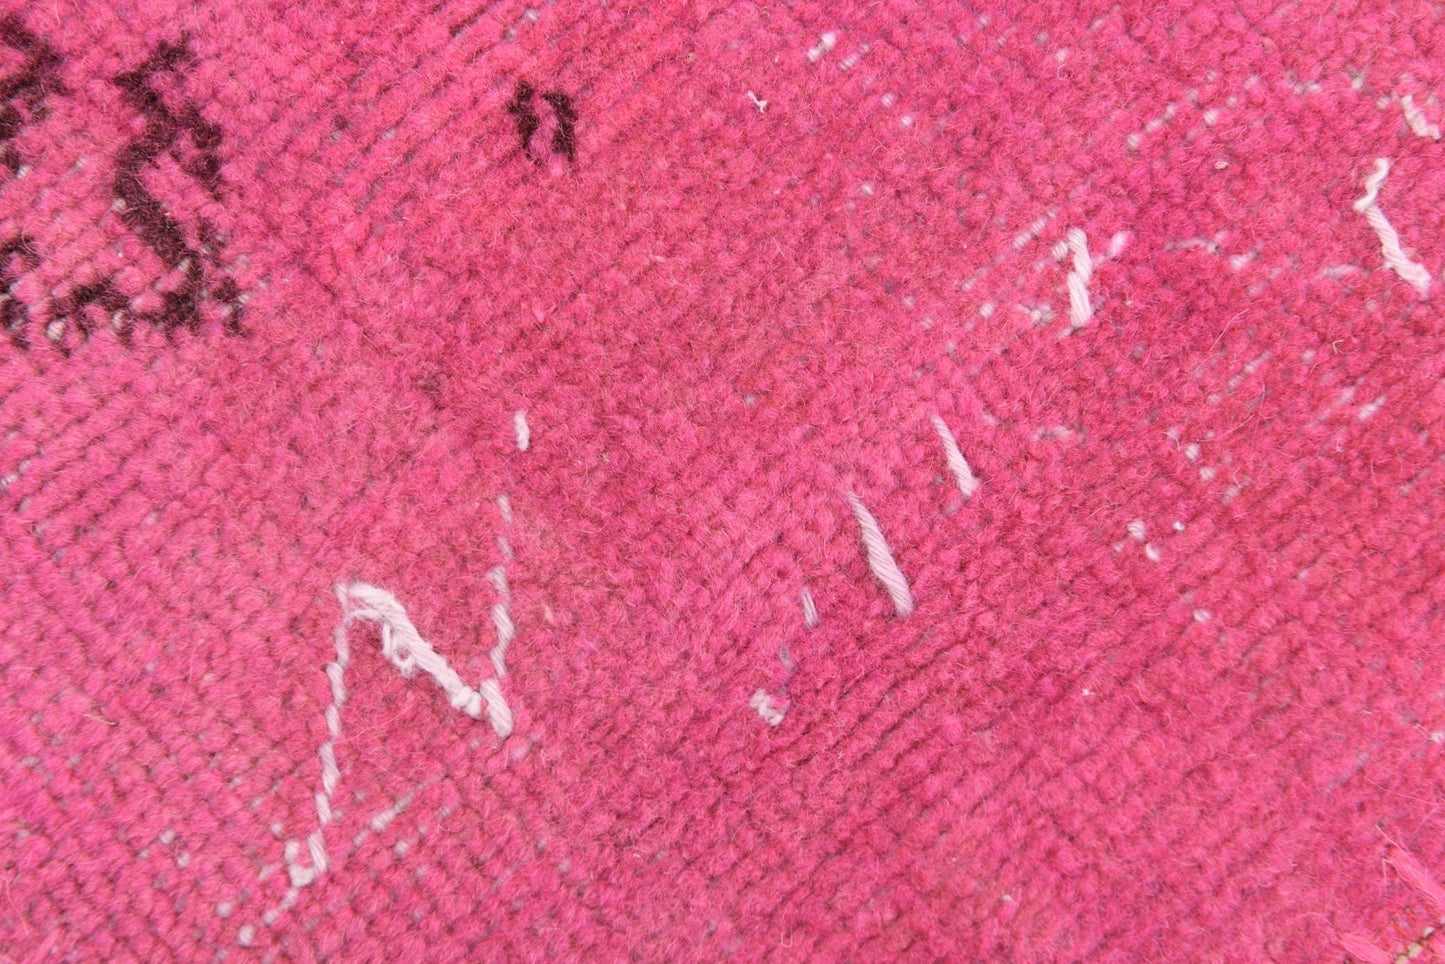 4' x 5' Pink Turkish Vintage Patchwork Rug  |  RugReform